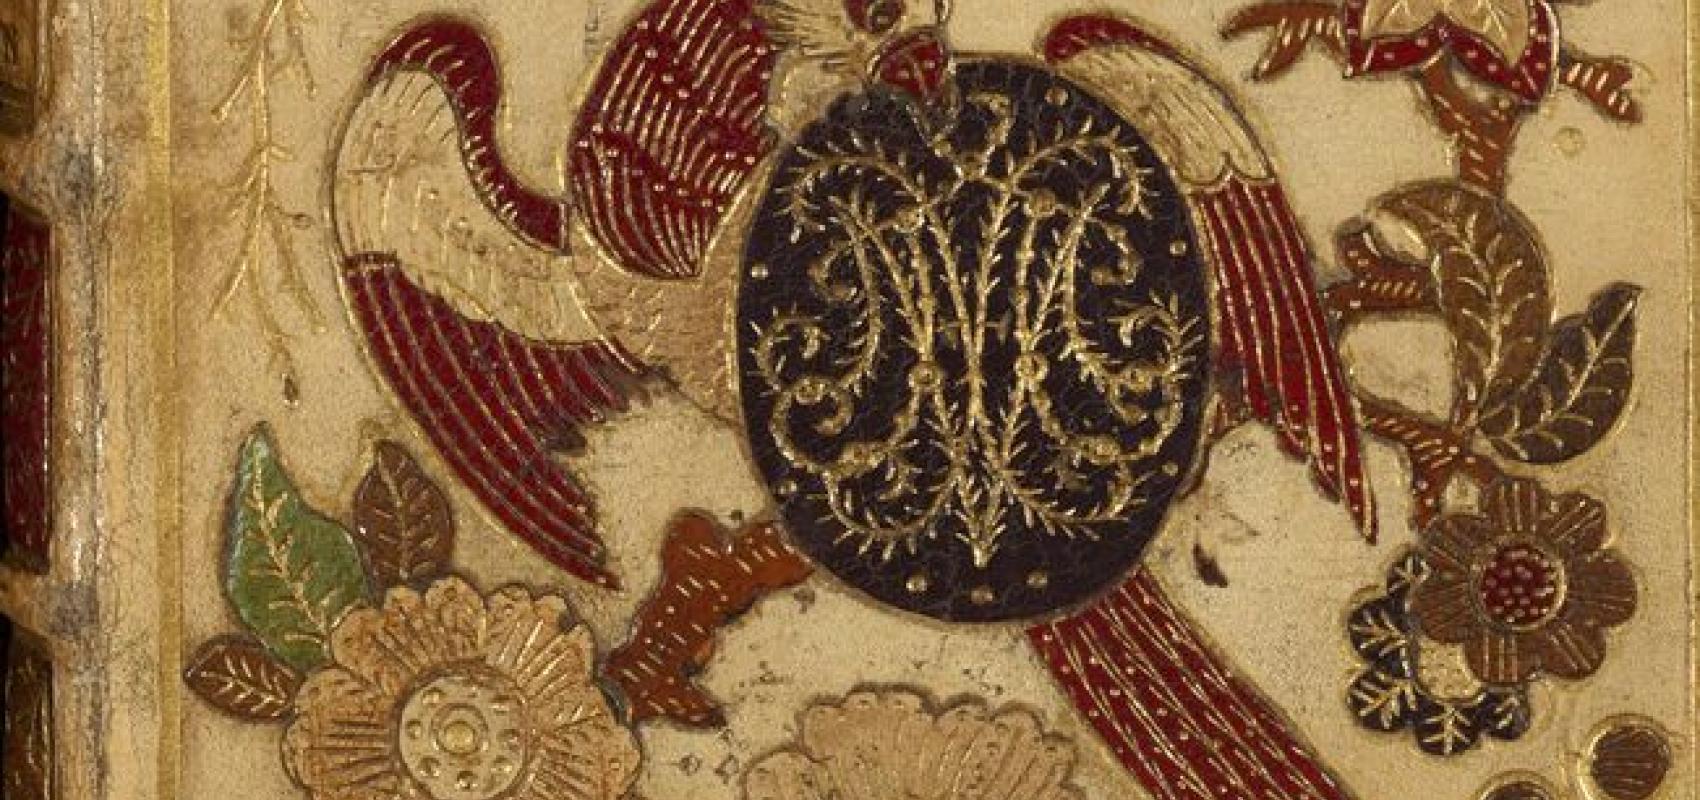 Reliure en veau crème à décor floral entièrement mosaïqué, au chiffre de Marie-Josèphe de Saxe, Paris, atelier Le Monnier - 1747 - BnF, Réserve des livres rares